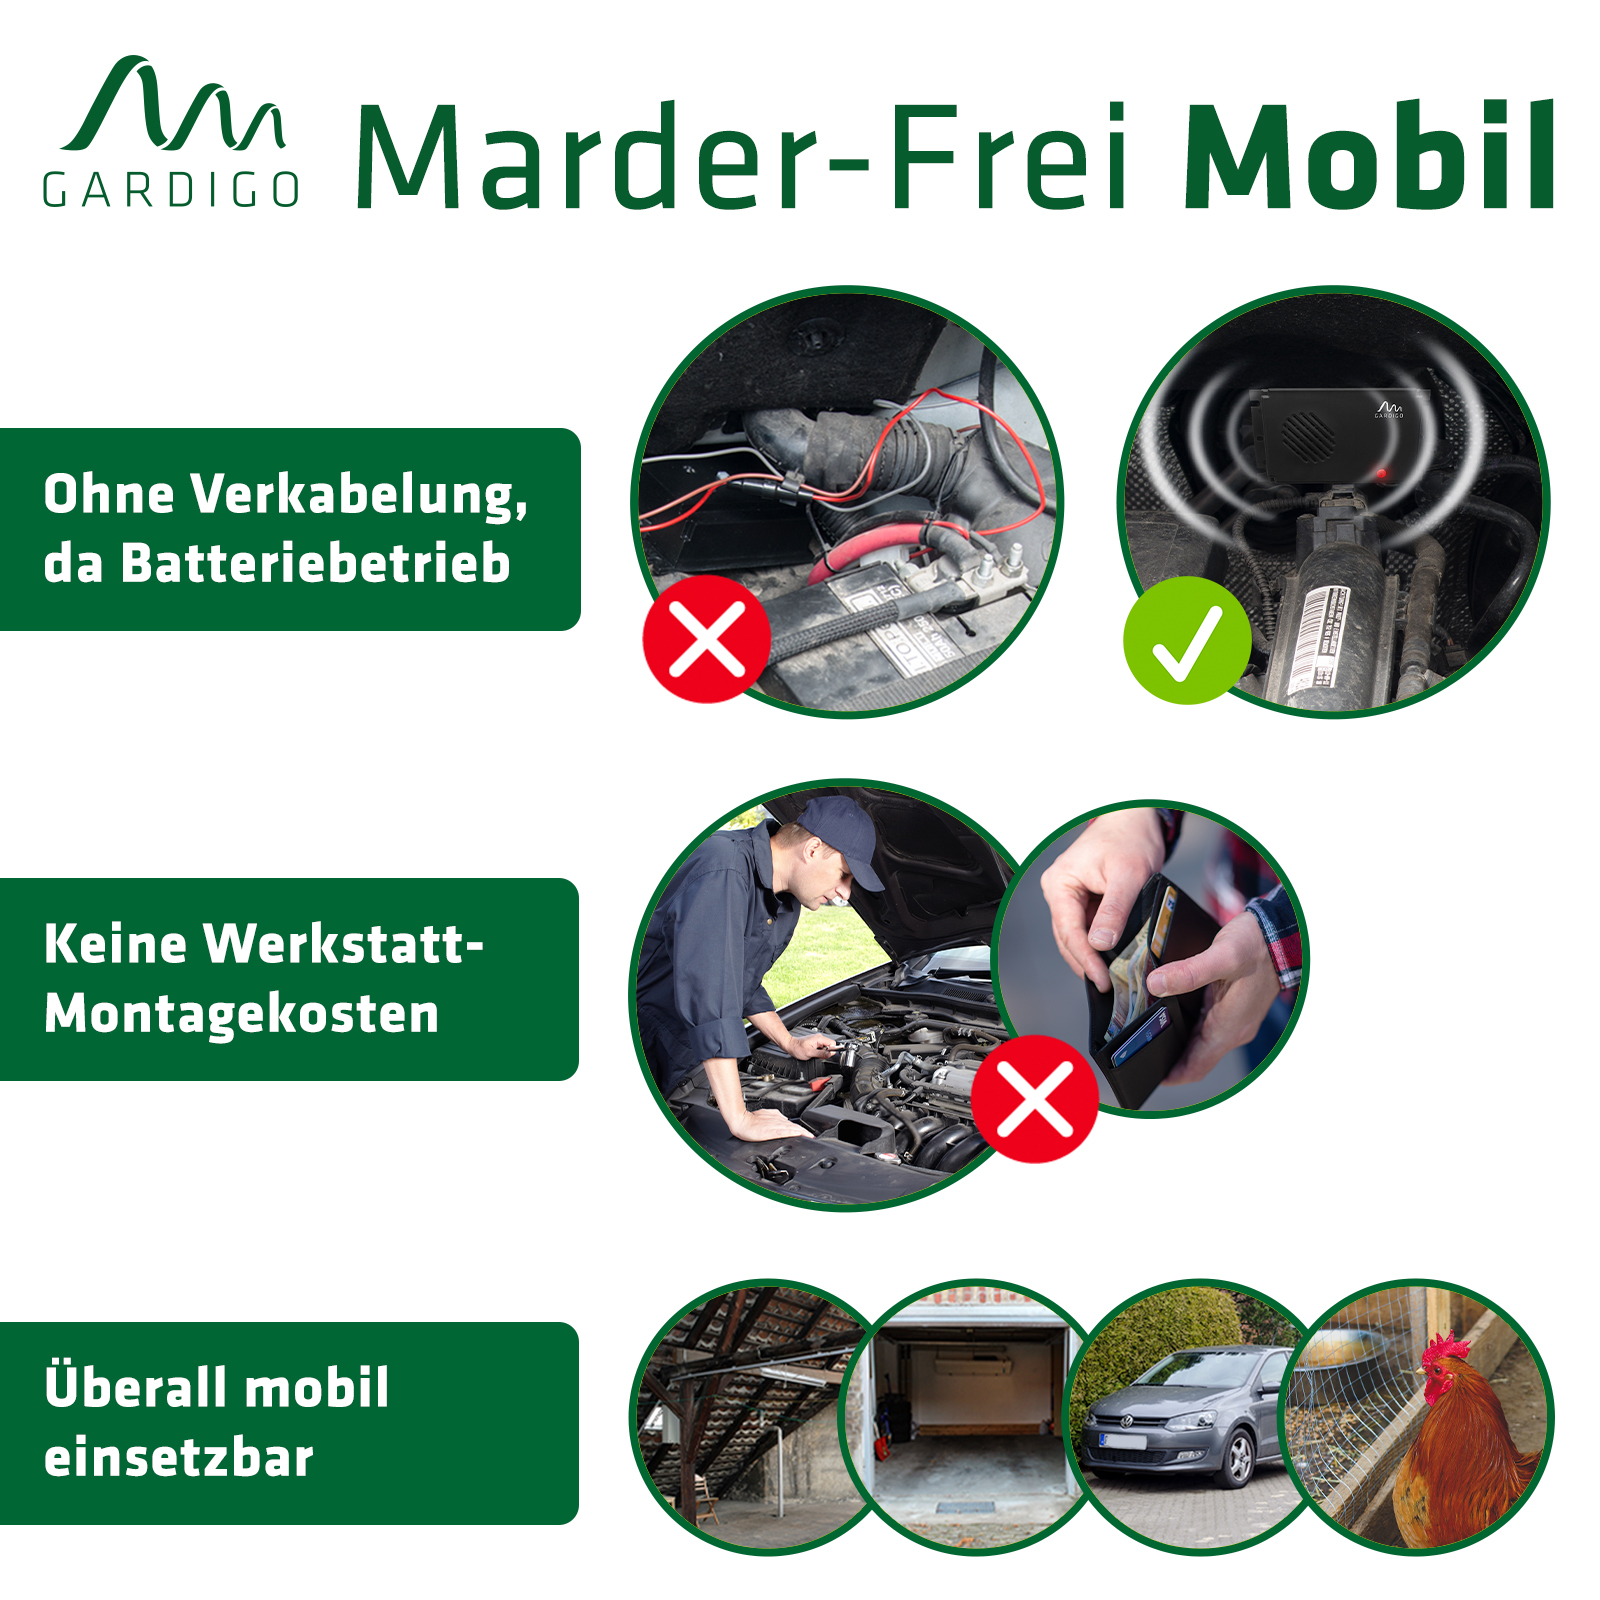 Gardigo Marderschreck Marder-Frei Mobil, Reichweite 40m²